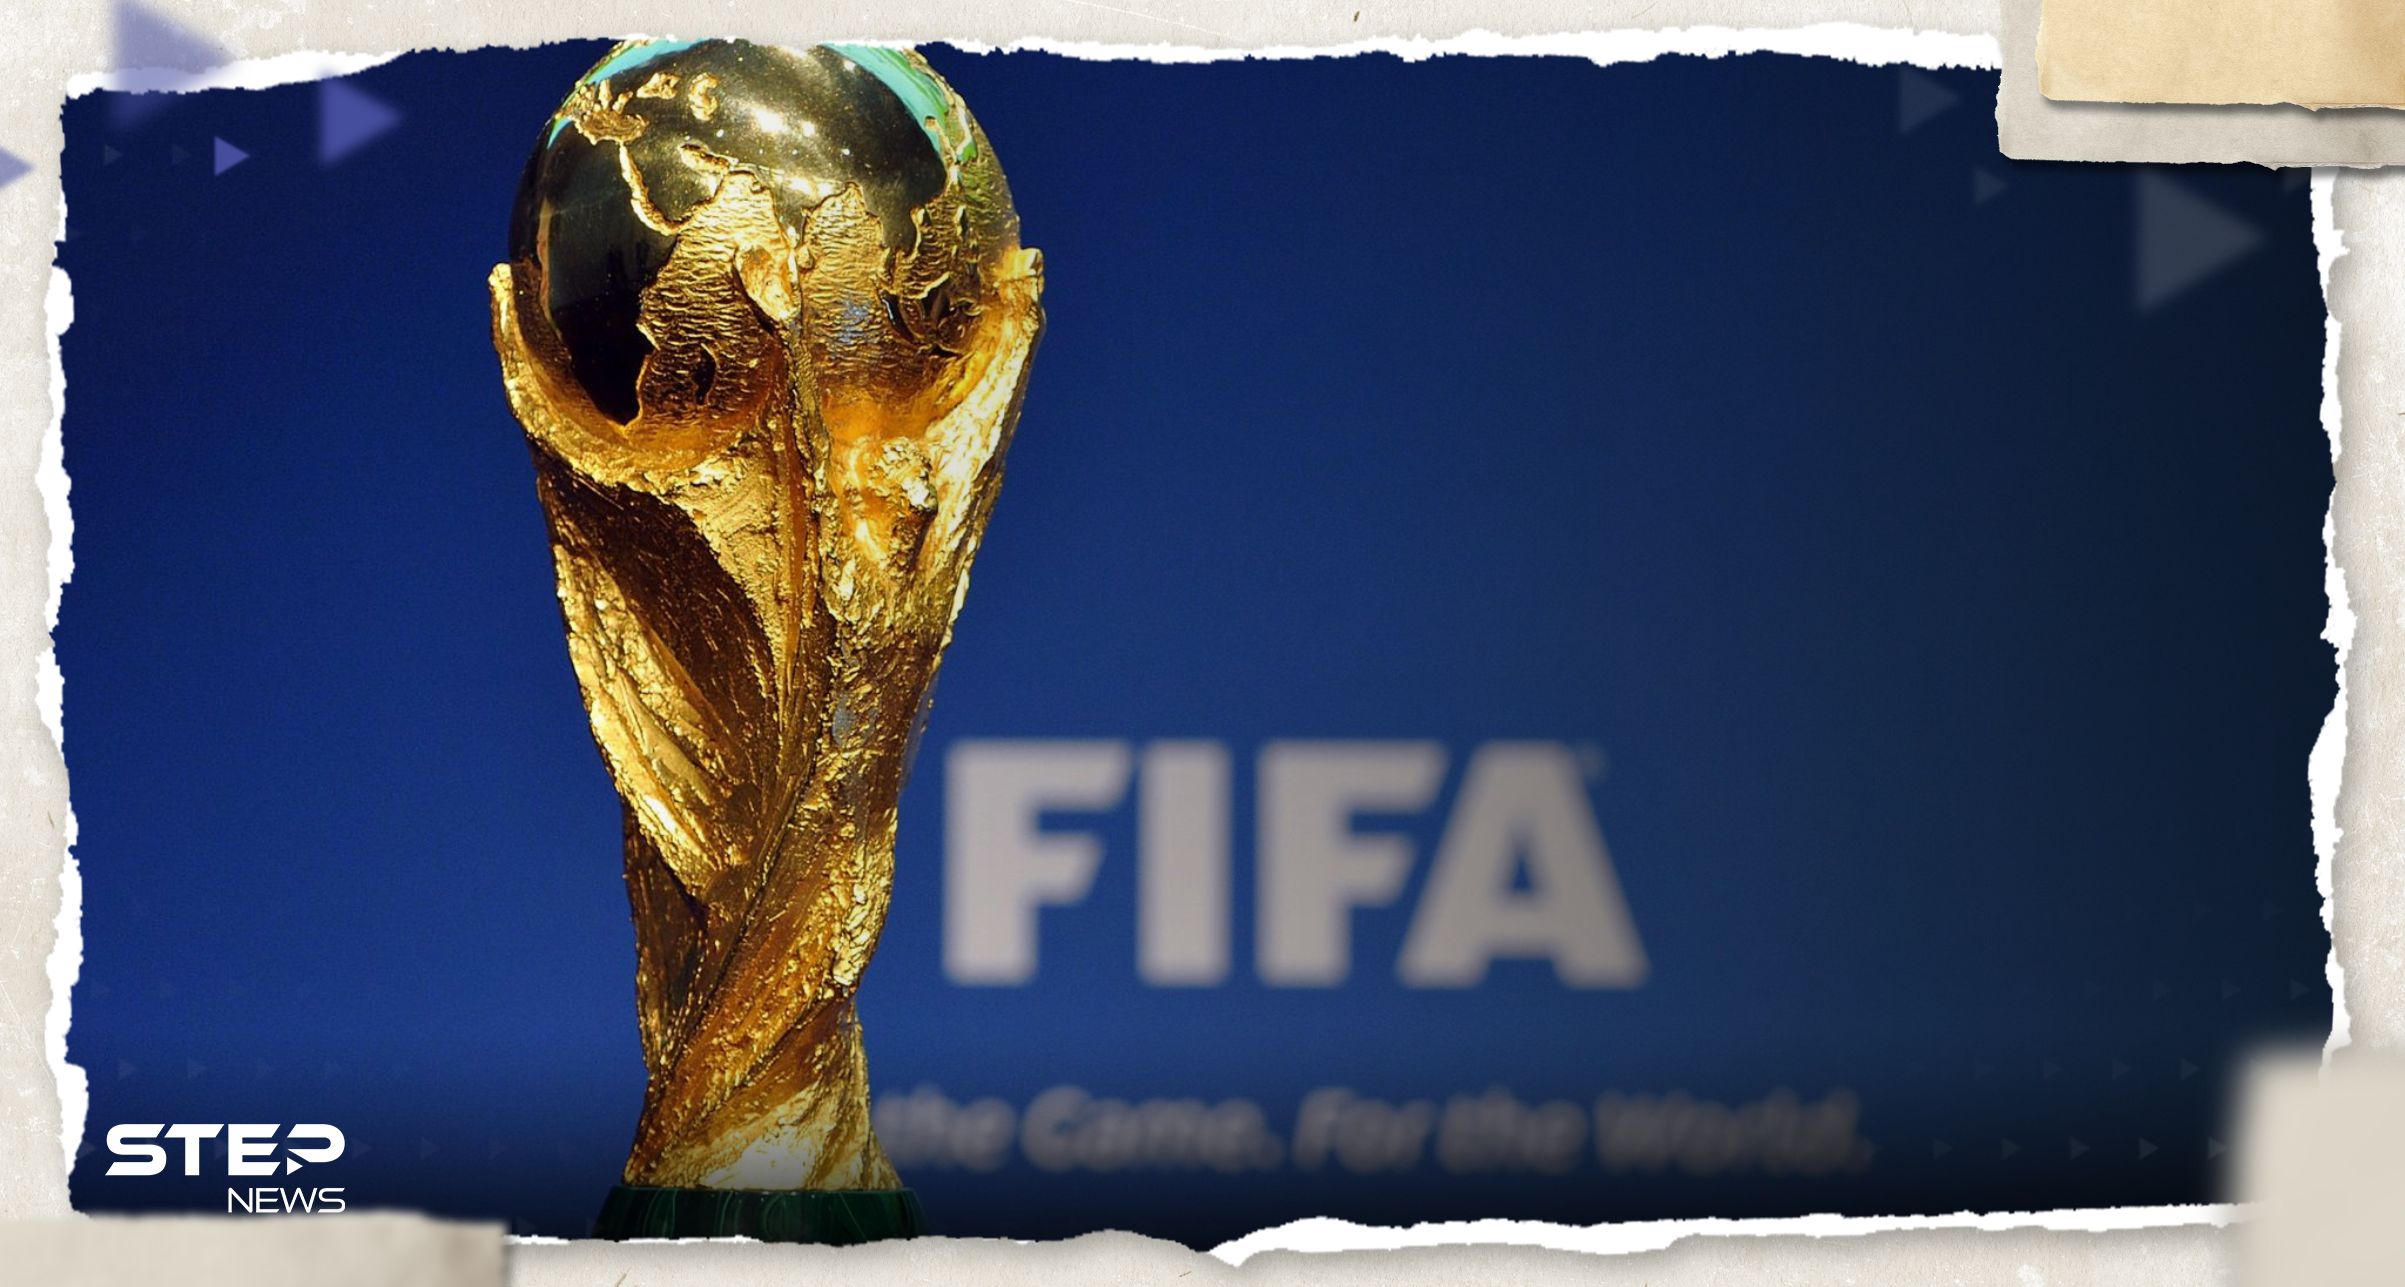 أول دولة عربية تعلن نيتها التقدم بطلب استضافة كأس العالم 2034